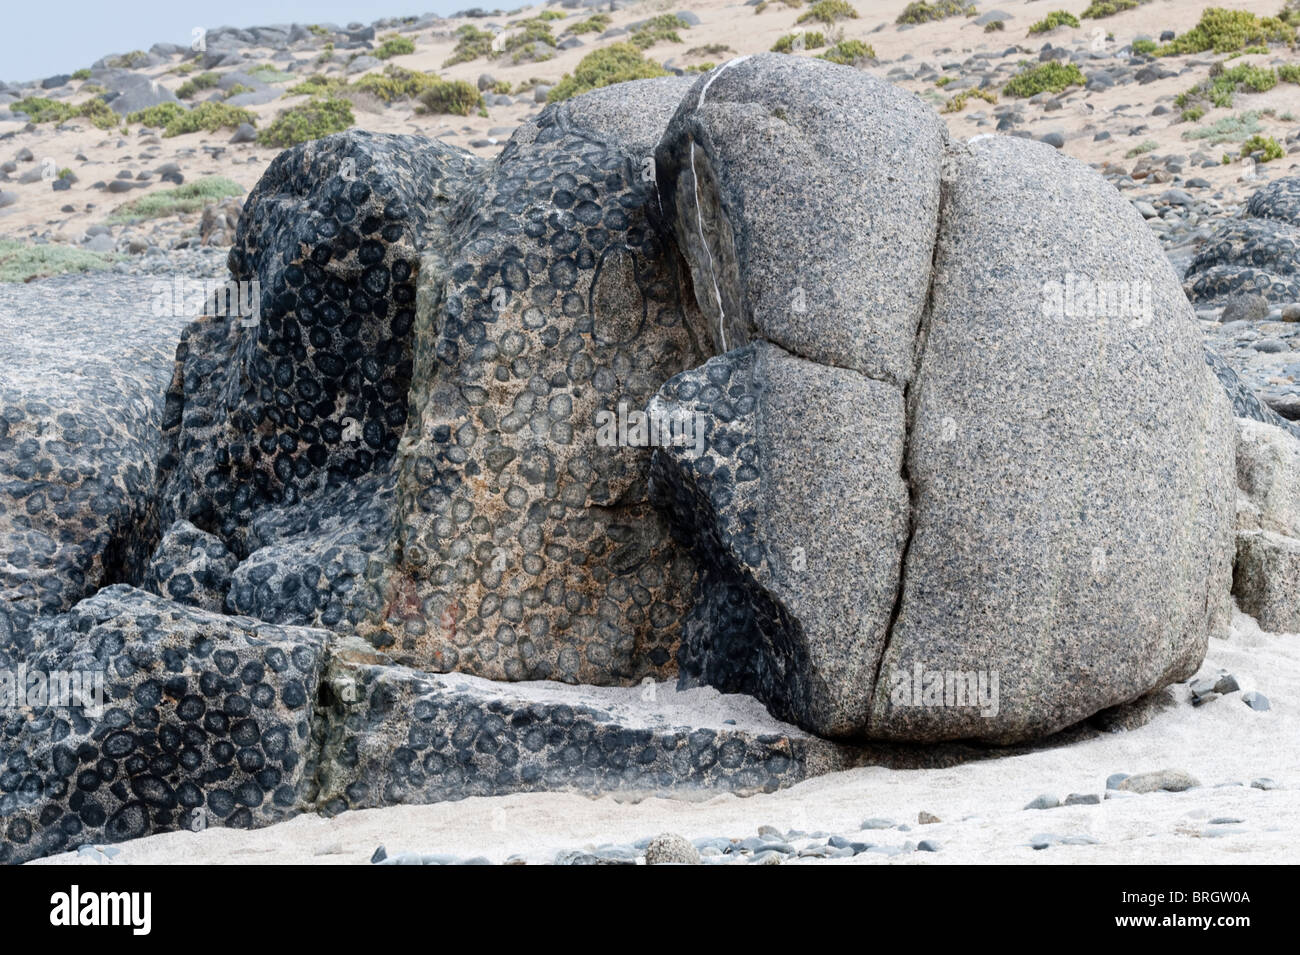 Granito Orbicular Rock in the Pacific Coast Santuario de la Naturaleza Rodillo Atacama Desert Chile South America Stock Photo